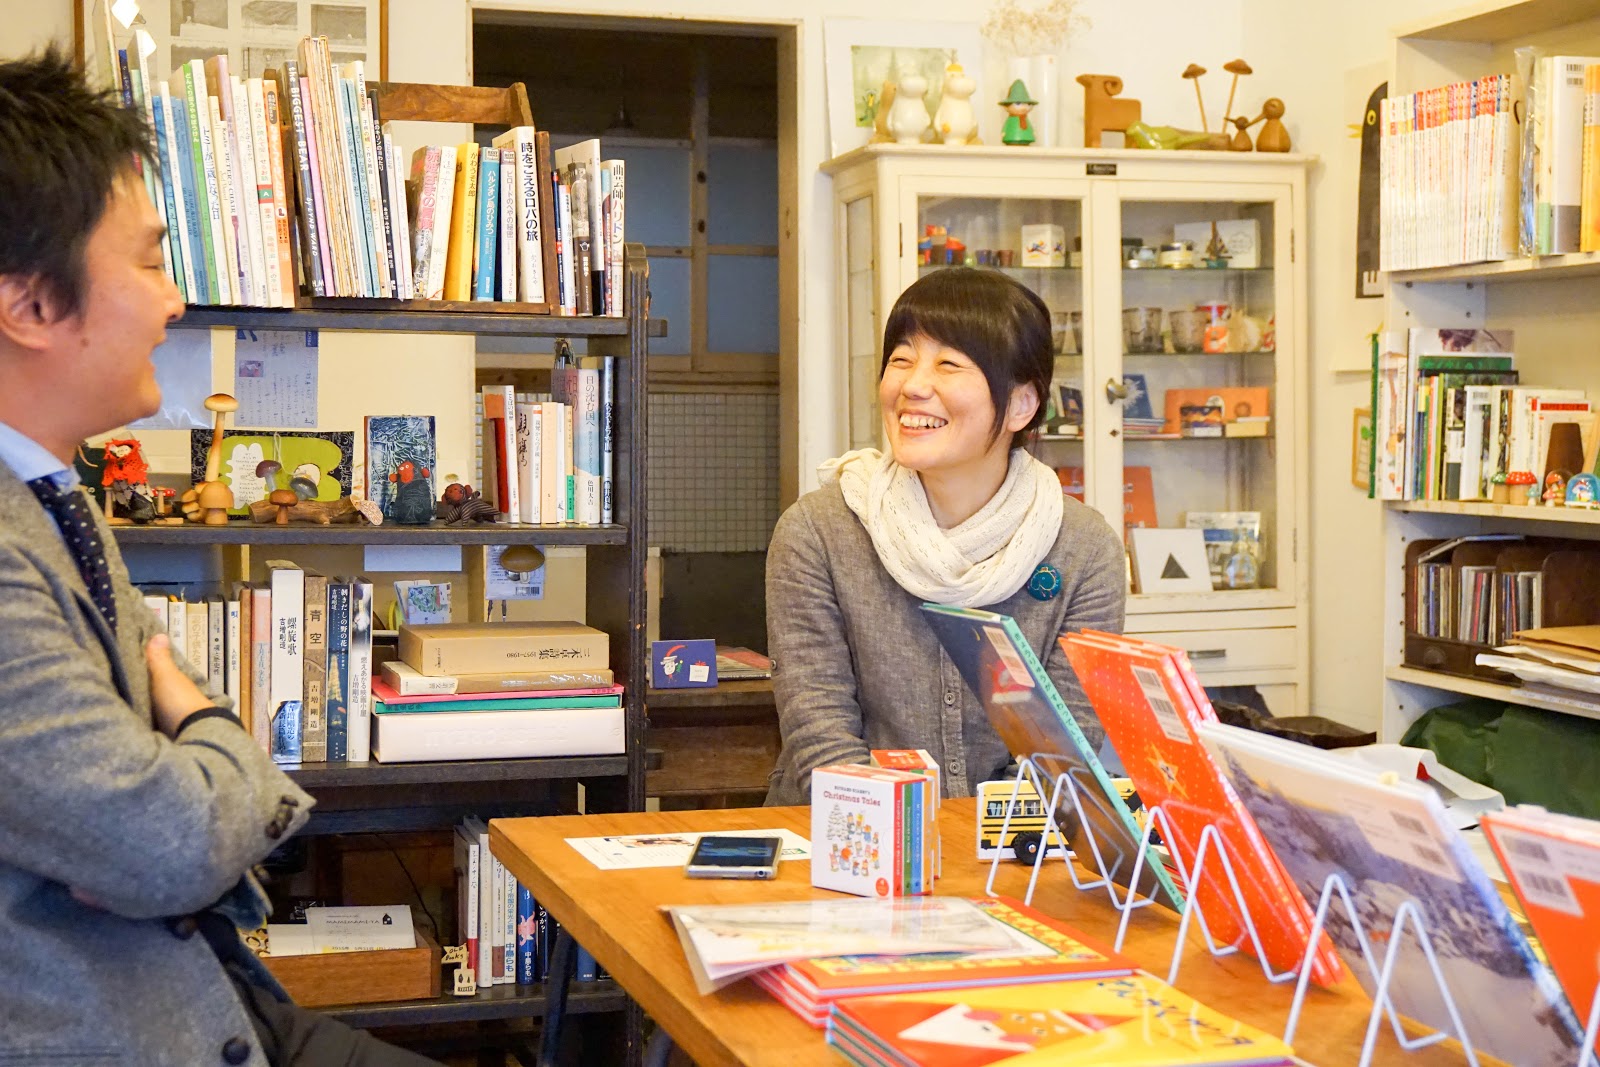 【まちなかストーリー】絵本の店「キルヤ」 星野紀子さん 第３回「絵本の店を続けていくこと」